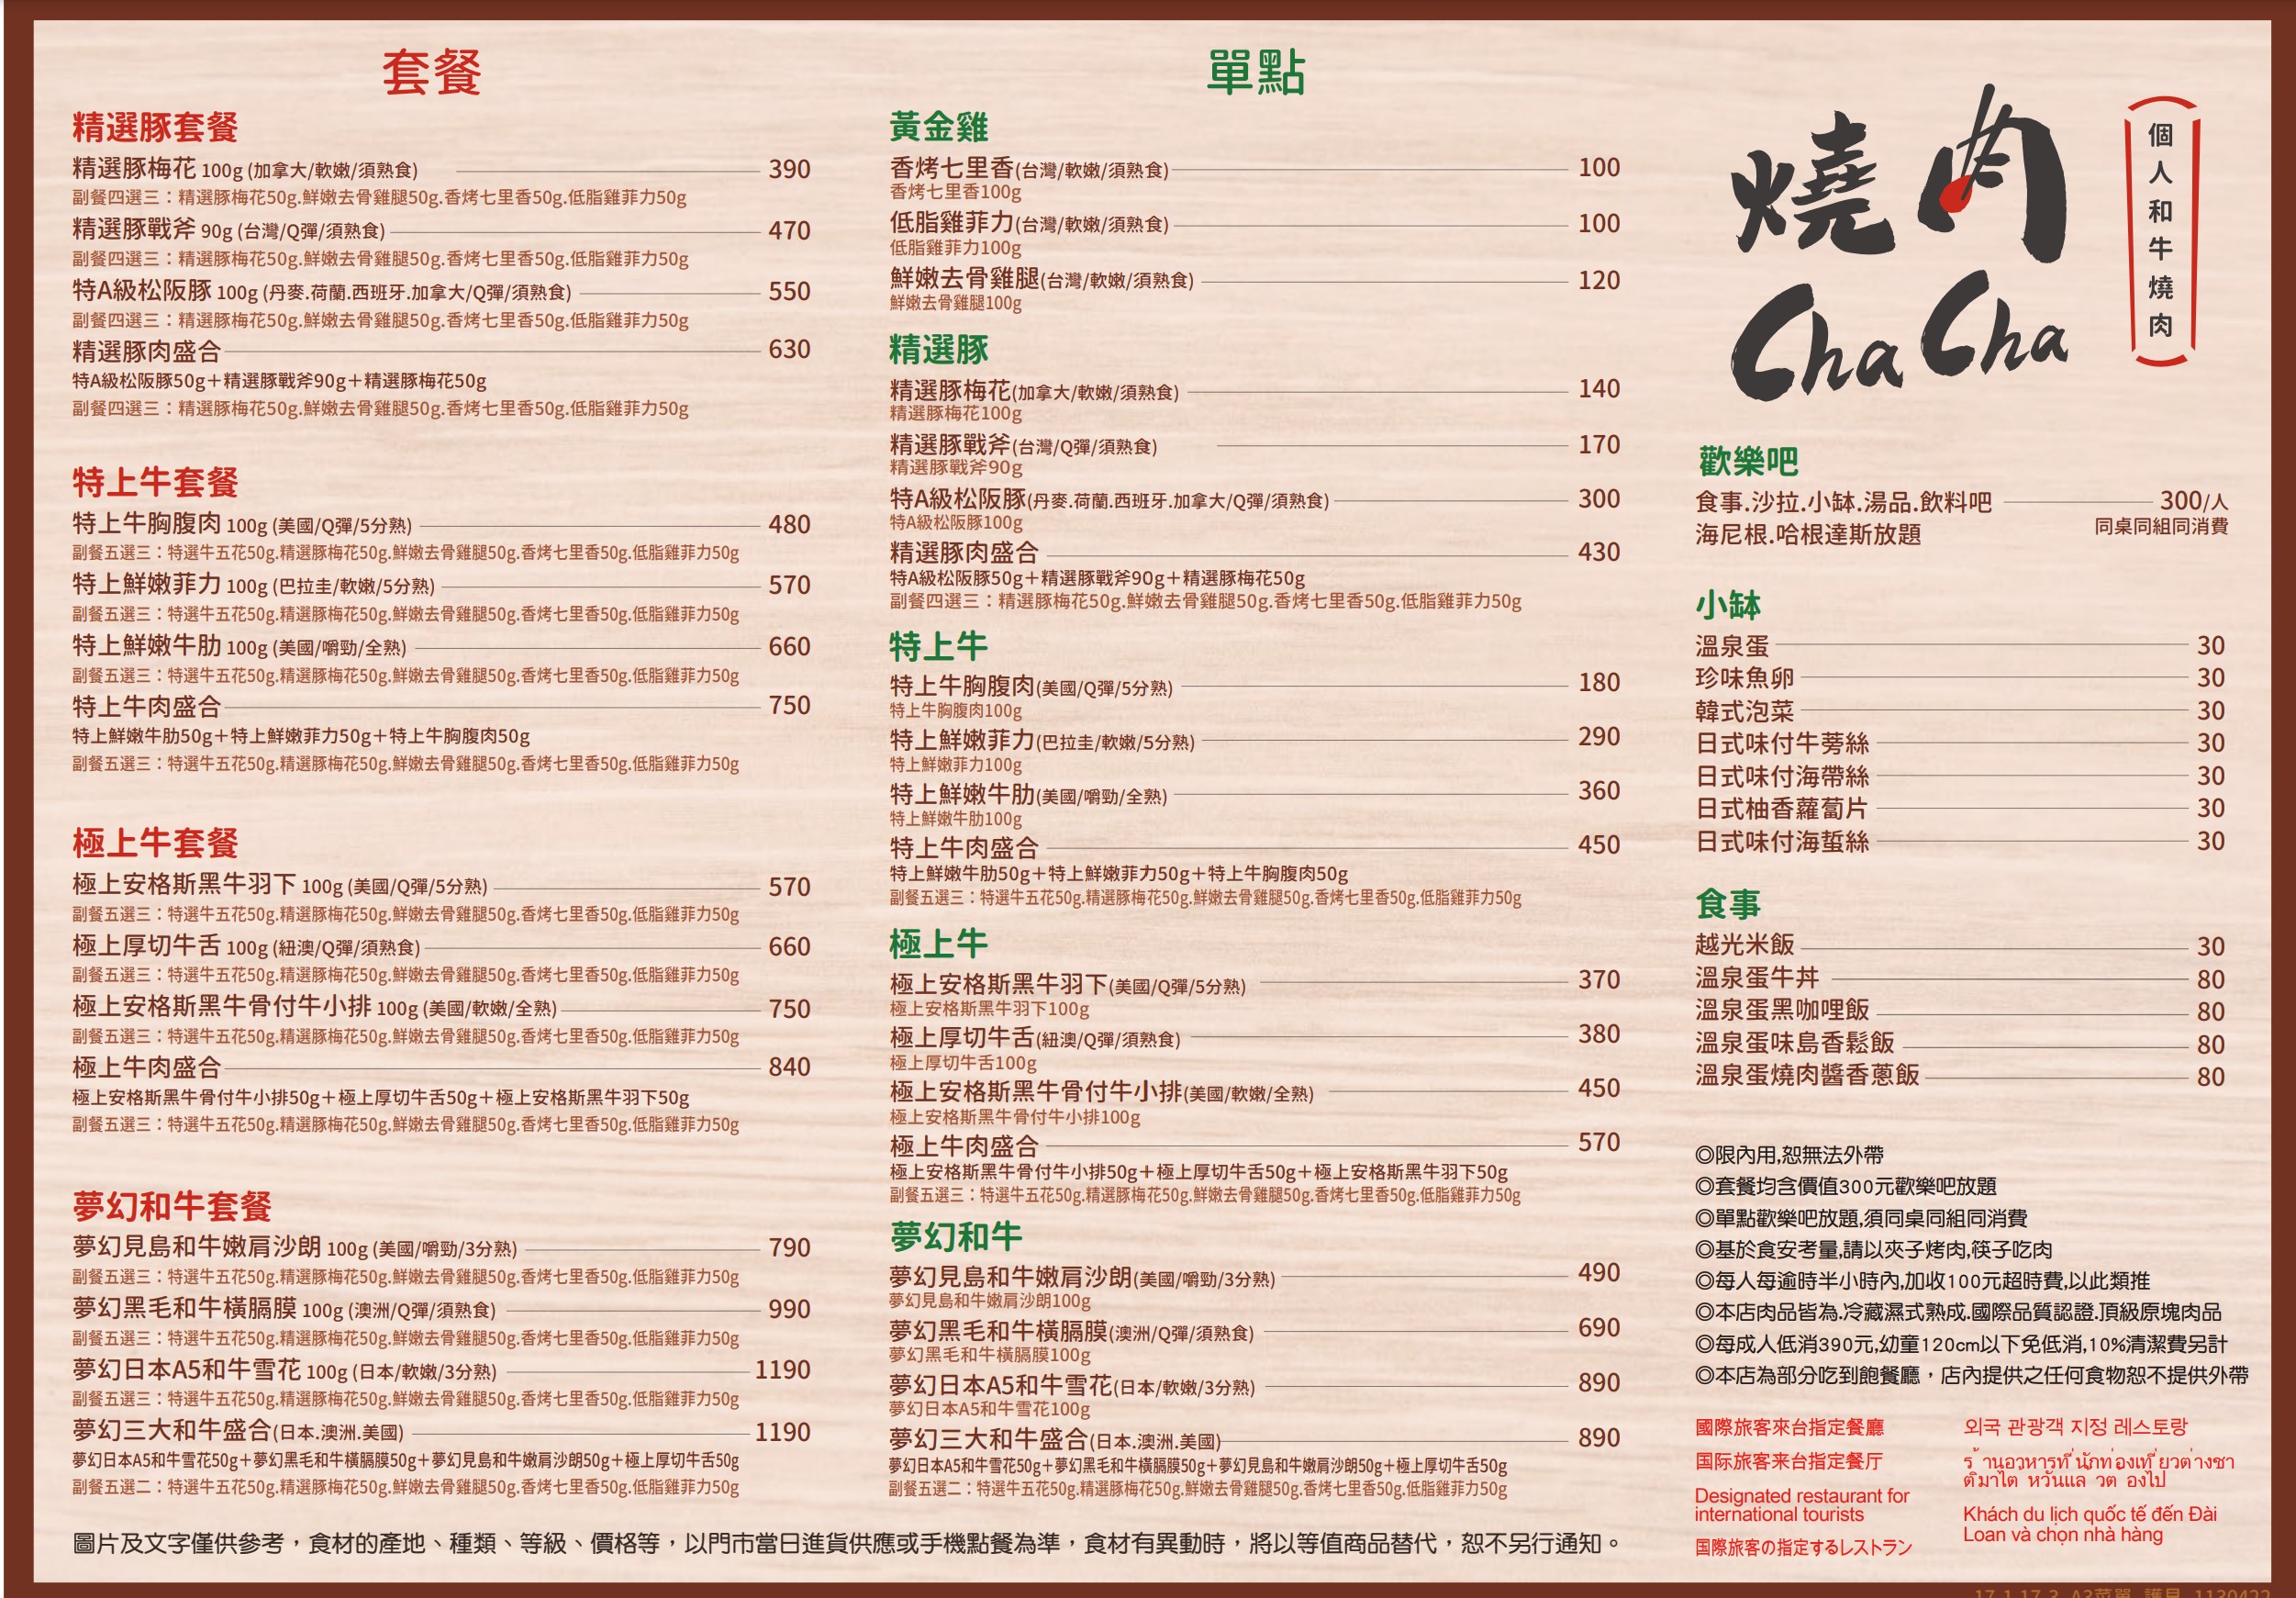 【台北西門町】燒肉chacha，一個人燒肉只要390元起自助吧無限享用！